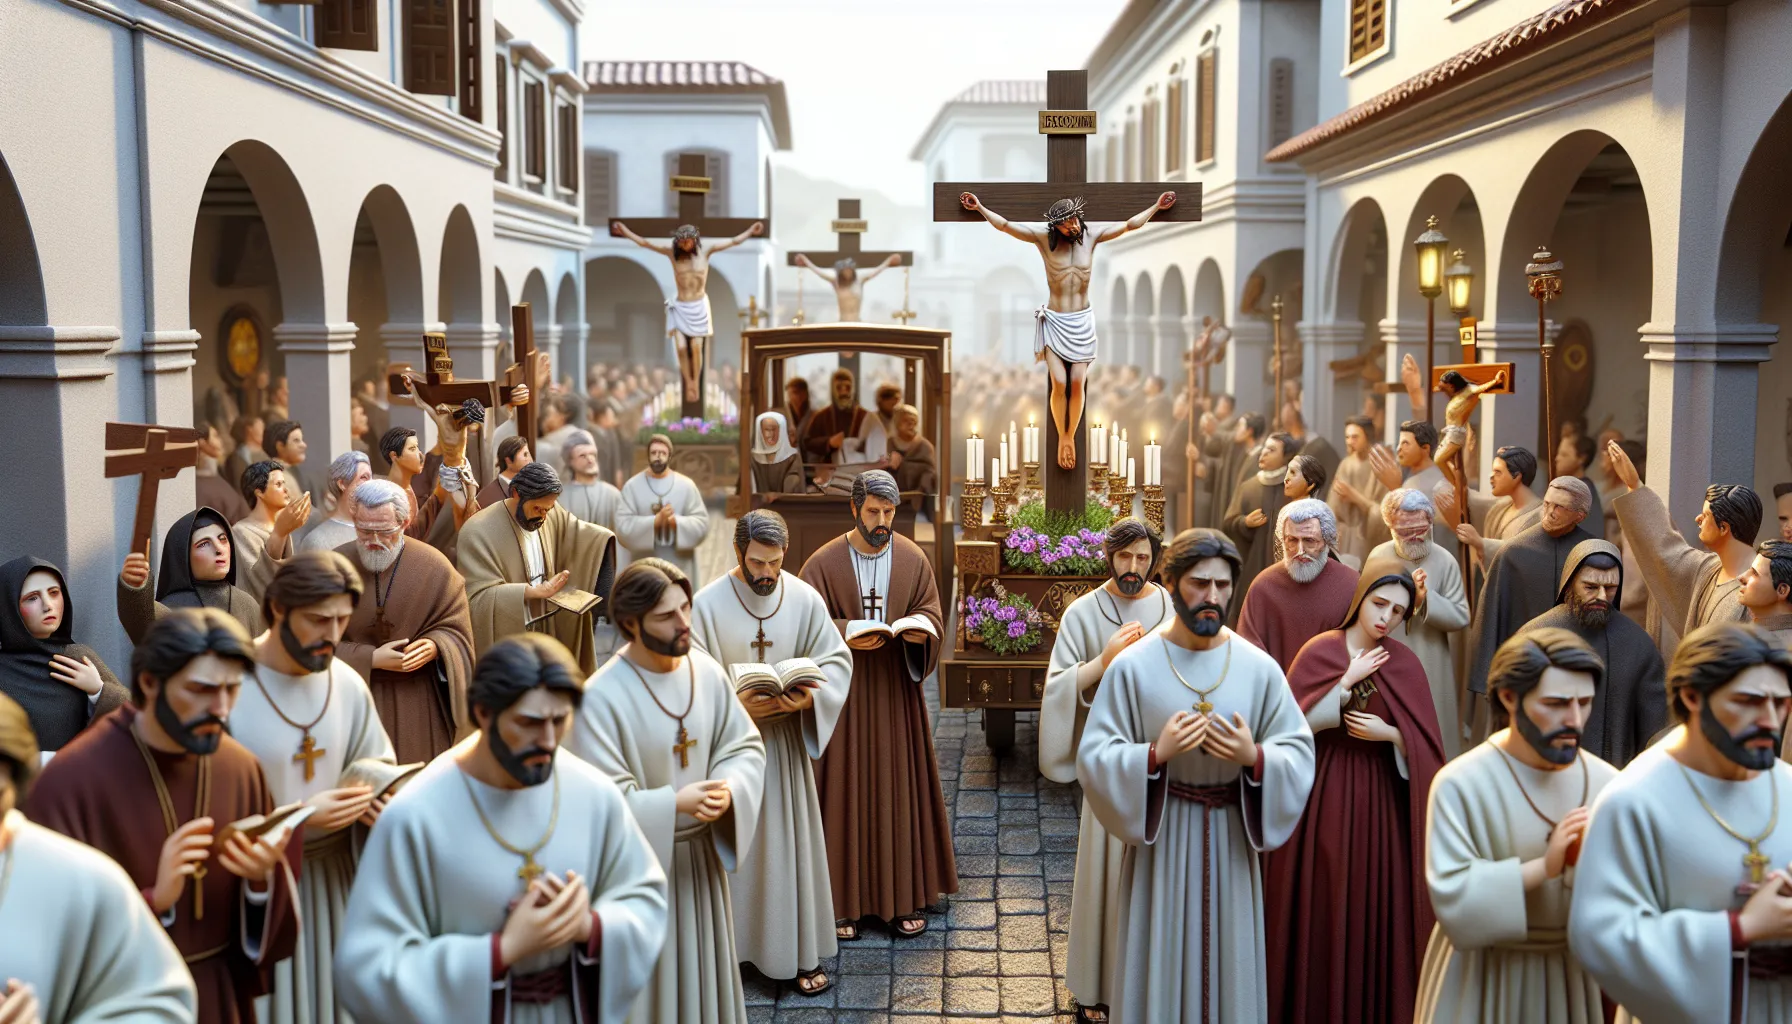 Imagen representativa de una procesión durante la Semana Santa